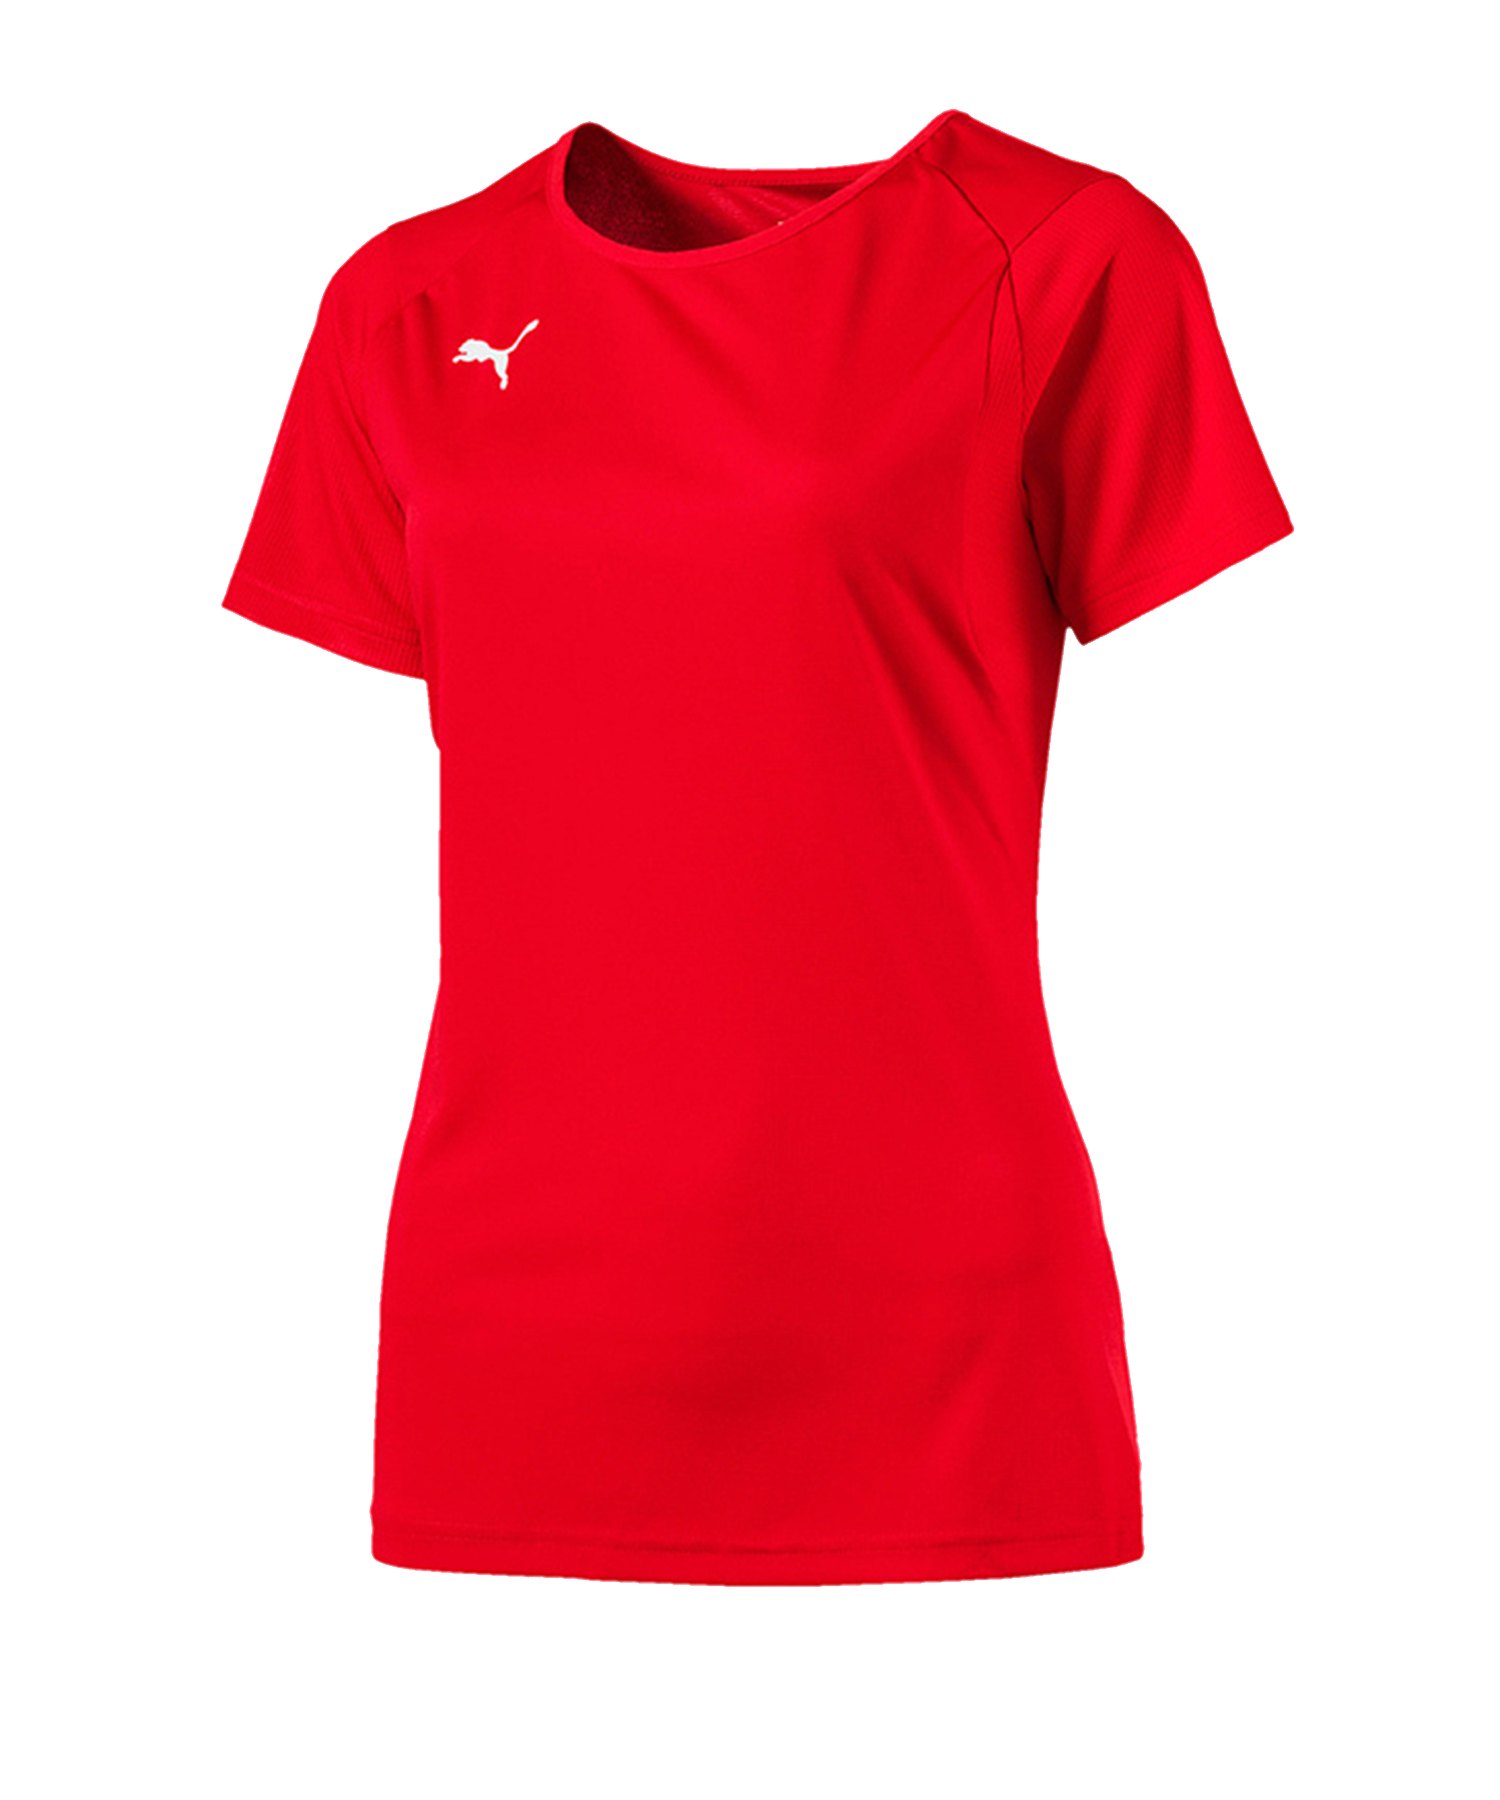 PUMA LIGA Training T-Shirt Damen Rot F01 - rot